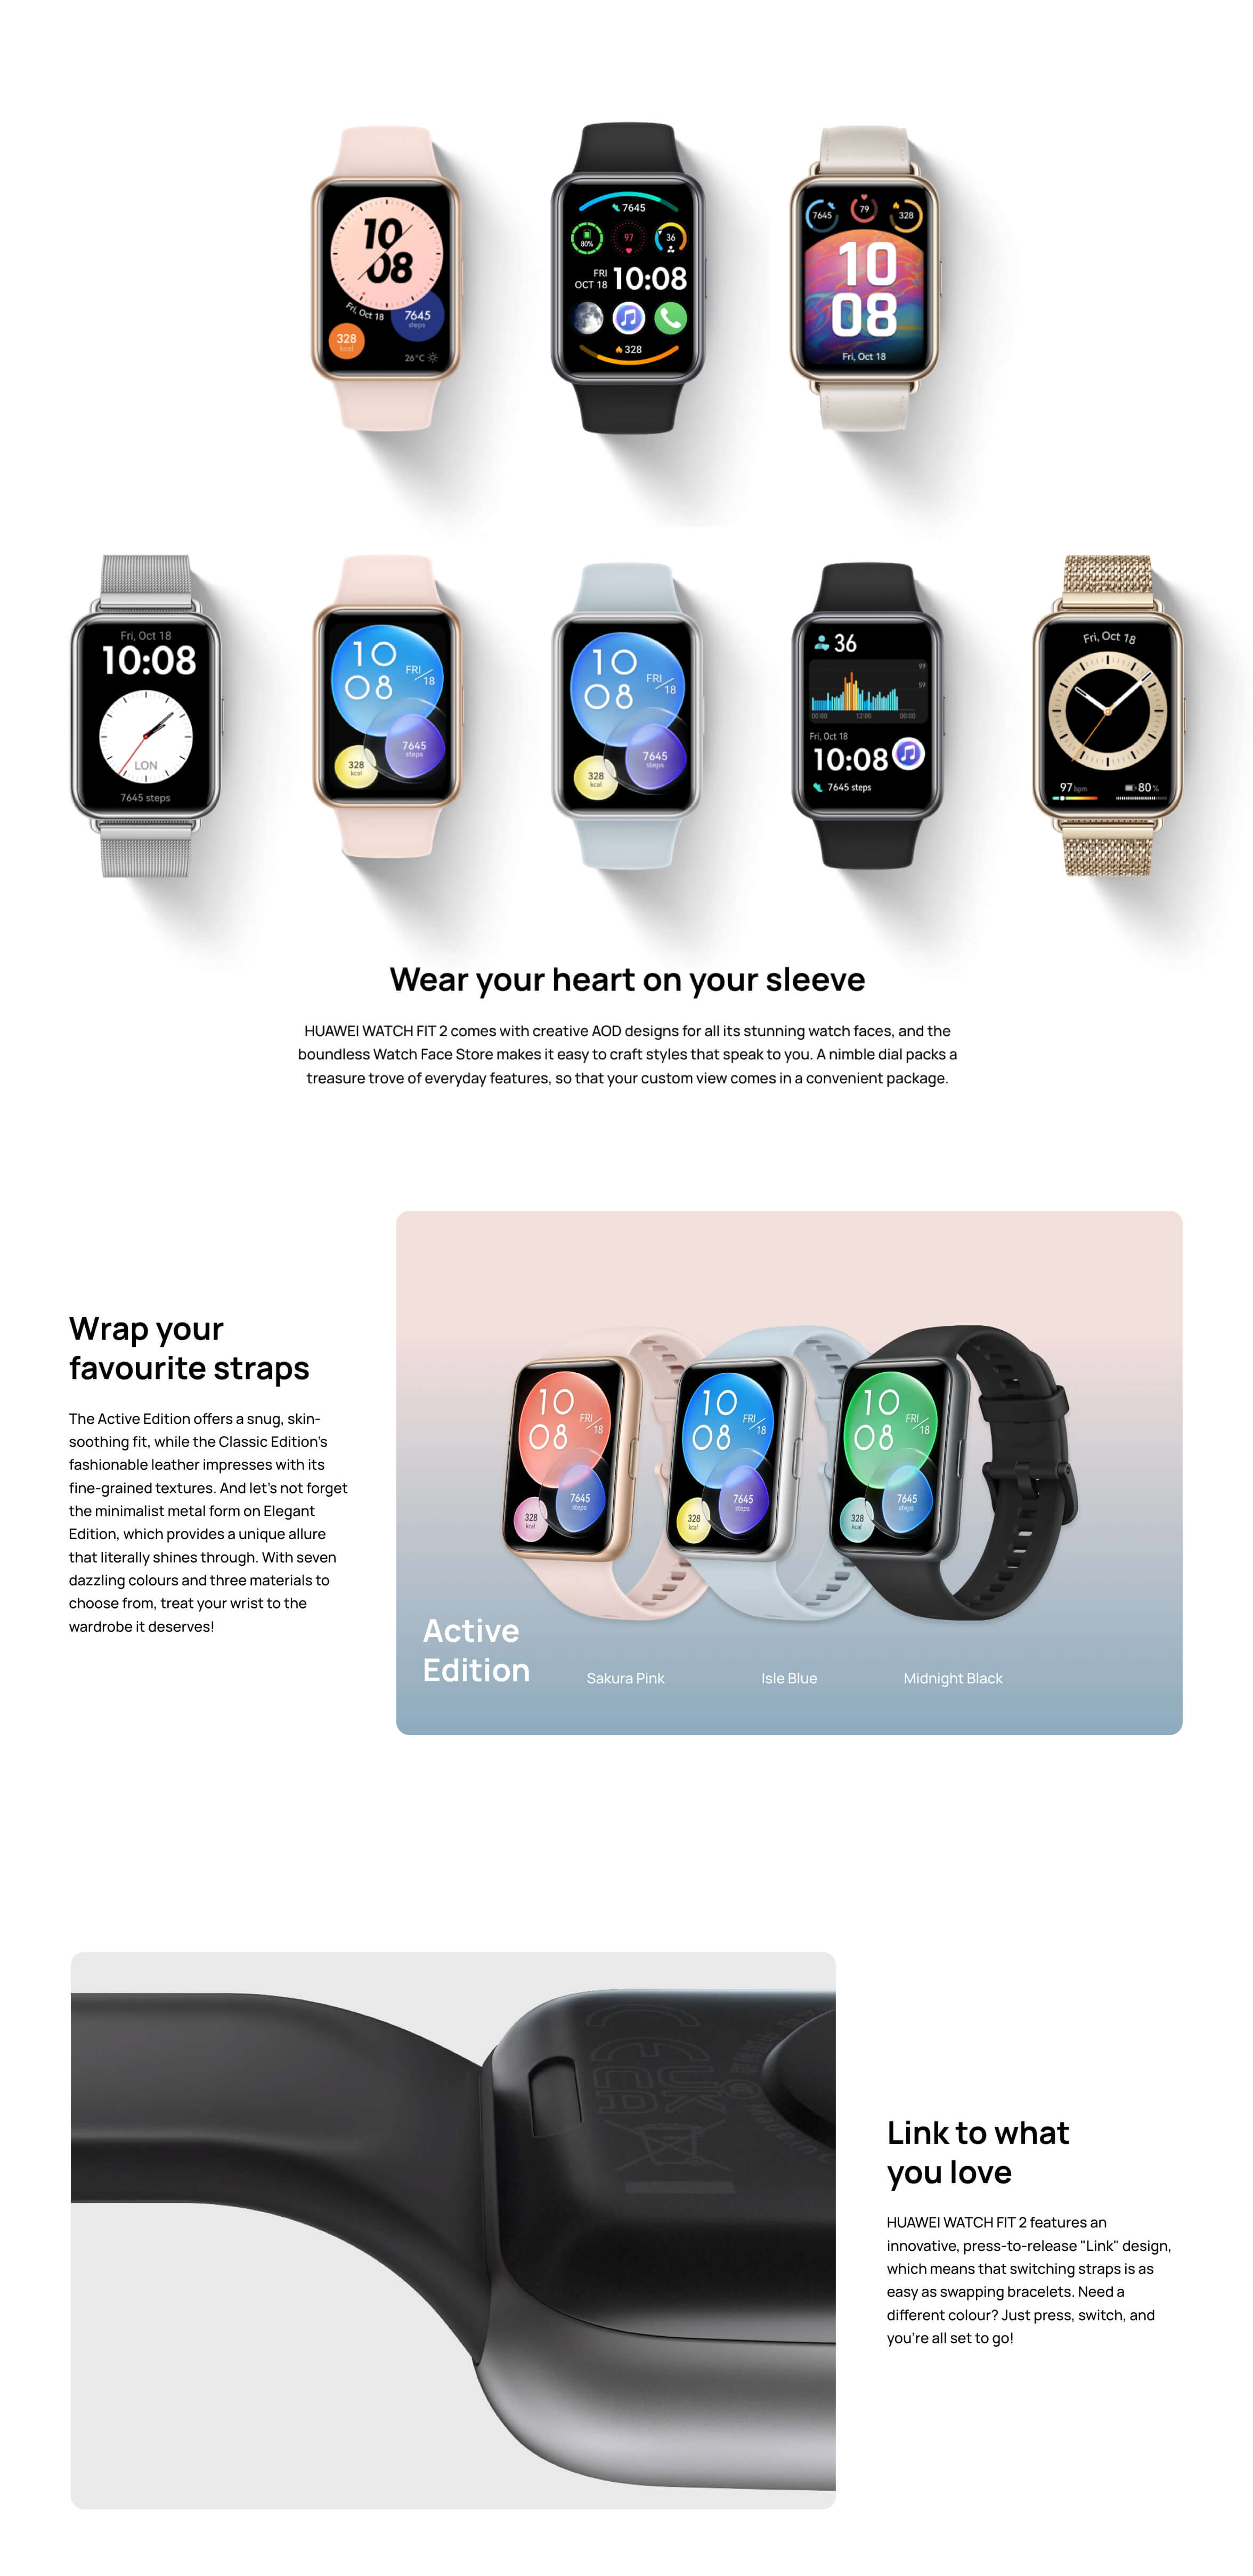 Smartwatch Huawei Watch Fit 2 1.74'' Amoled 4gb 5 Atm Color de la caja Rosa  Color